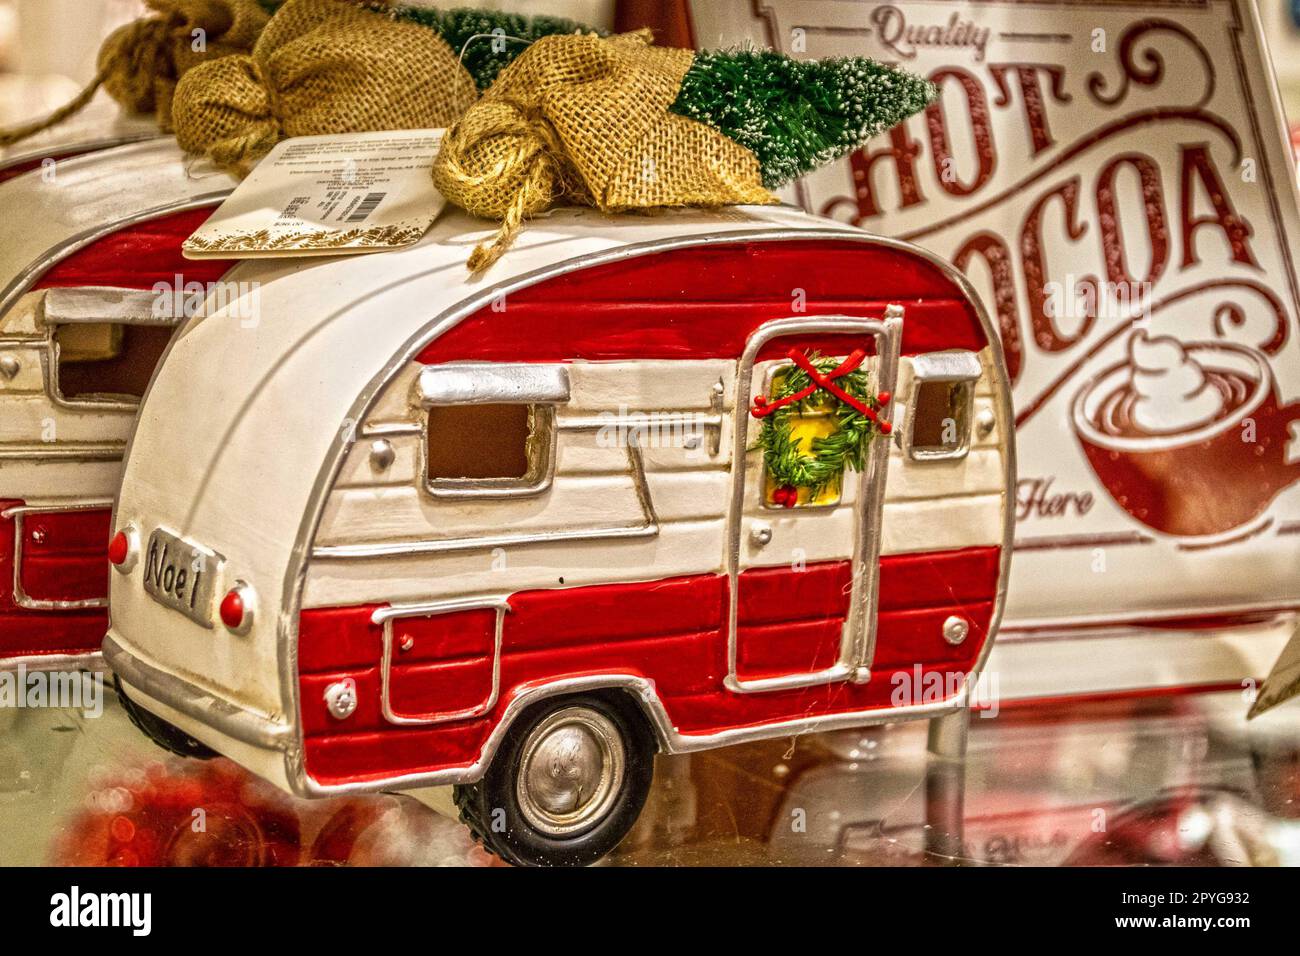 Adorno de Navidad retro Vintage Camper Trailer con corona en la puerta y árbol de Navidad en la parte superior sobre fondo difuminado, incluido el signo de chocolate caliente Foto de stock